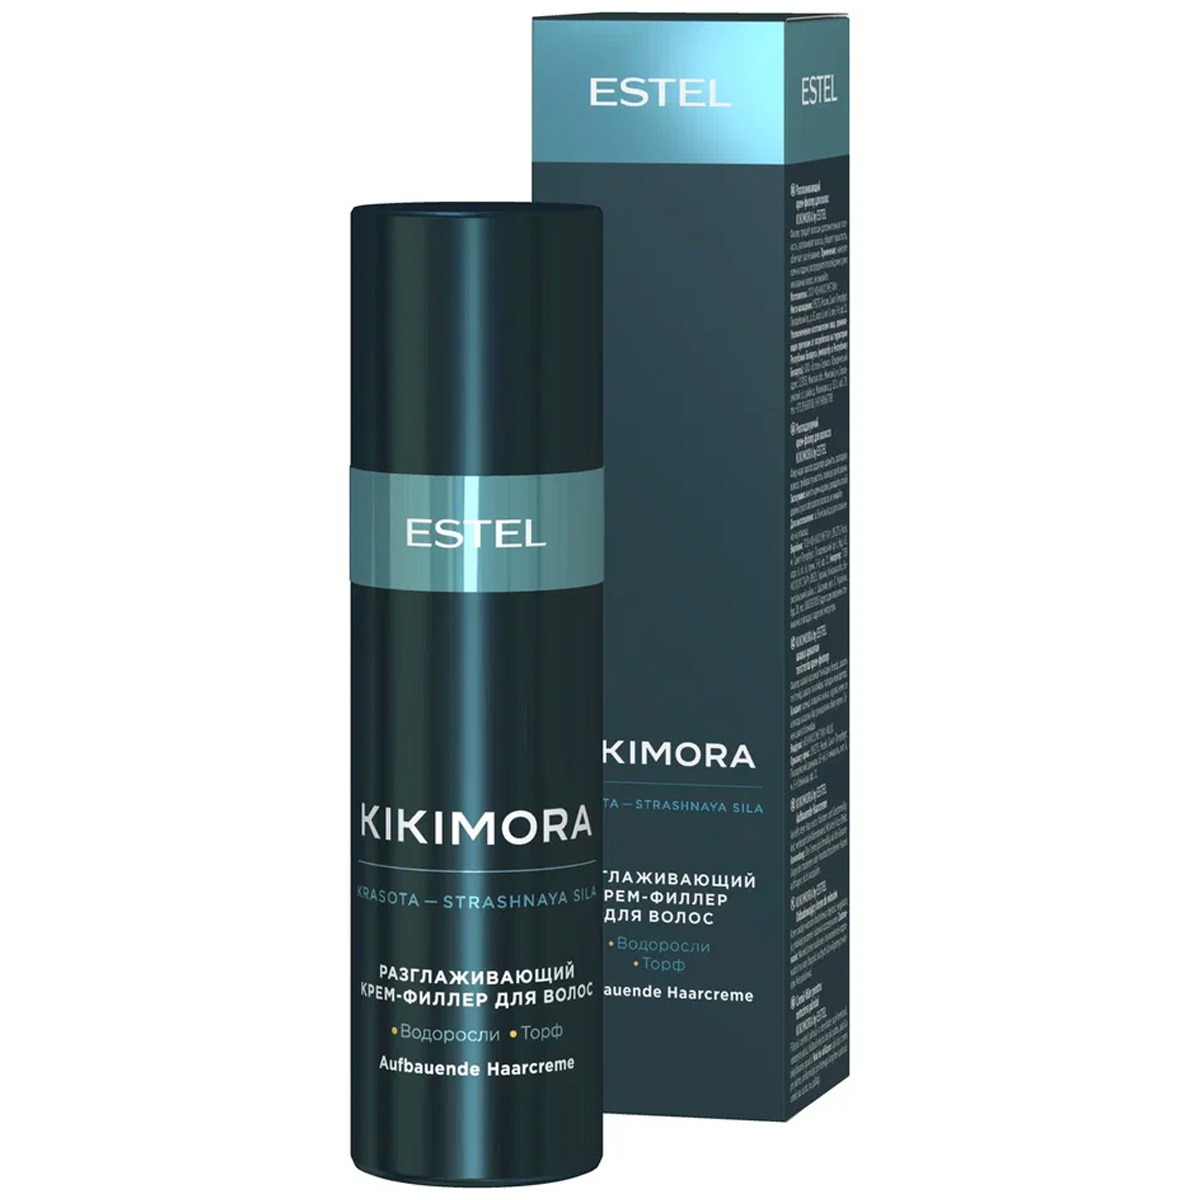 Estel Разглаживающий крем - филлер для волос, 100 мл (Estel, Kikimora) набор estel kikimora кикимора